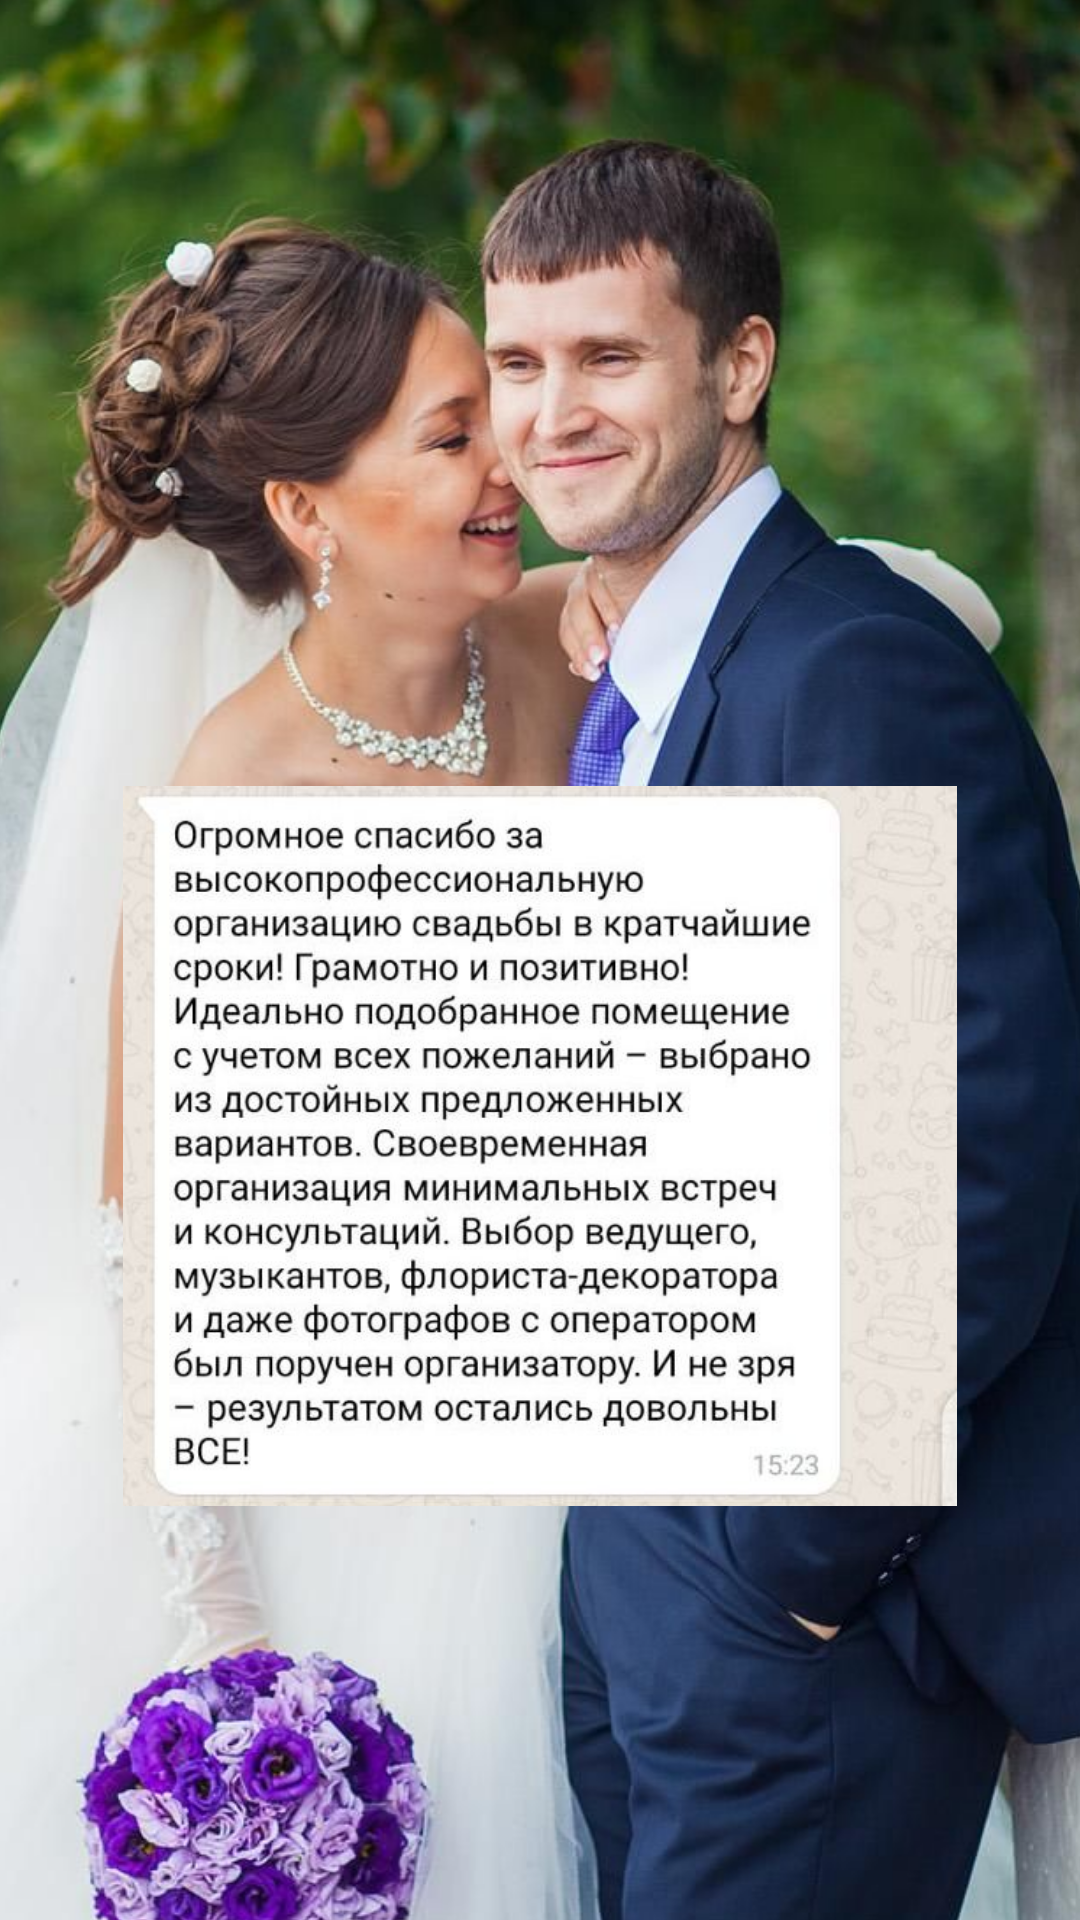 Организация свадьбы в Ростове-на-Дону
от компании Pandaevent